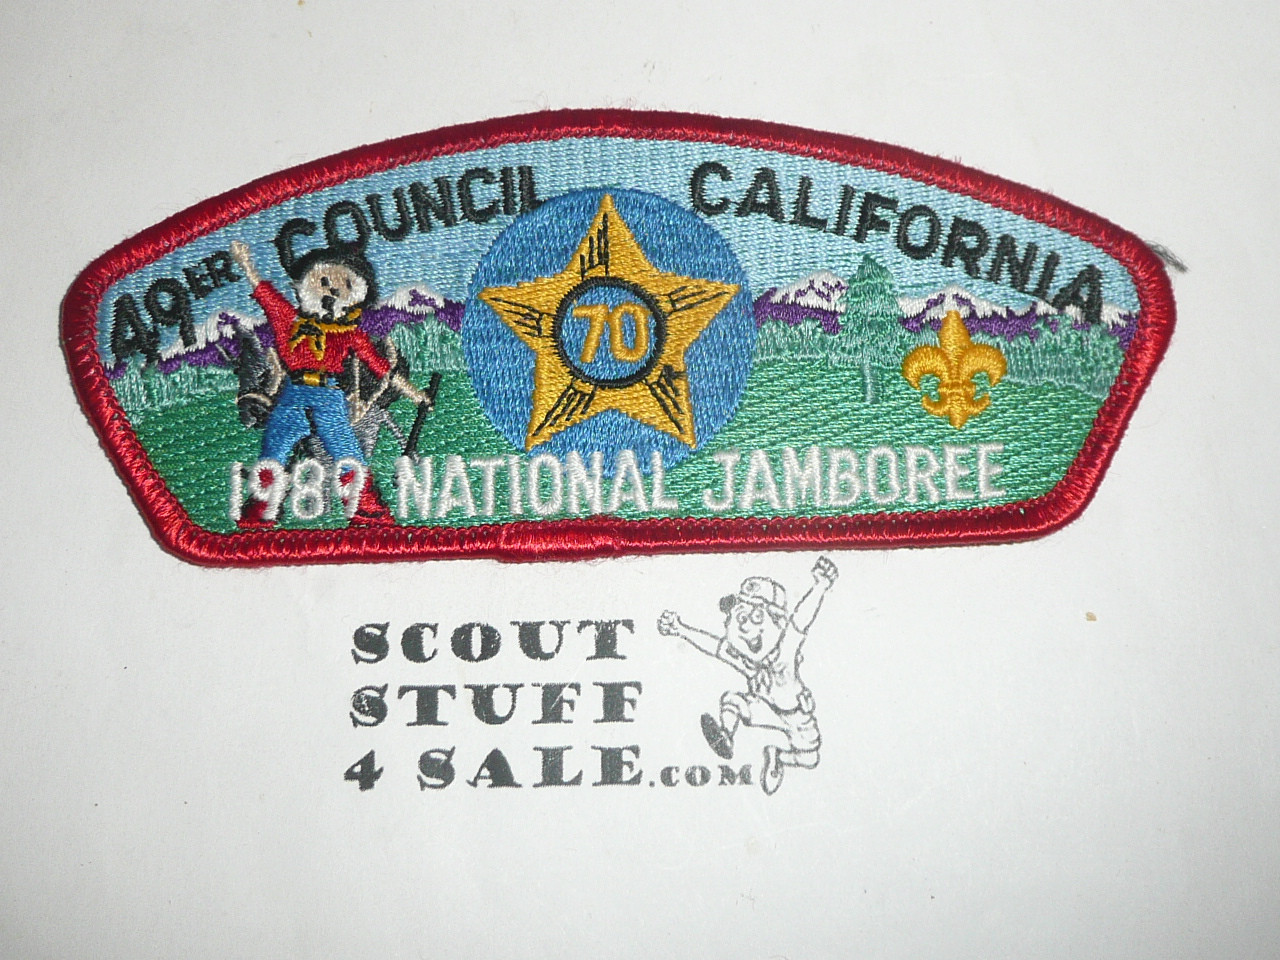 1989 National Jamboree JSP - Forty Niner Council